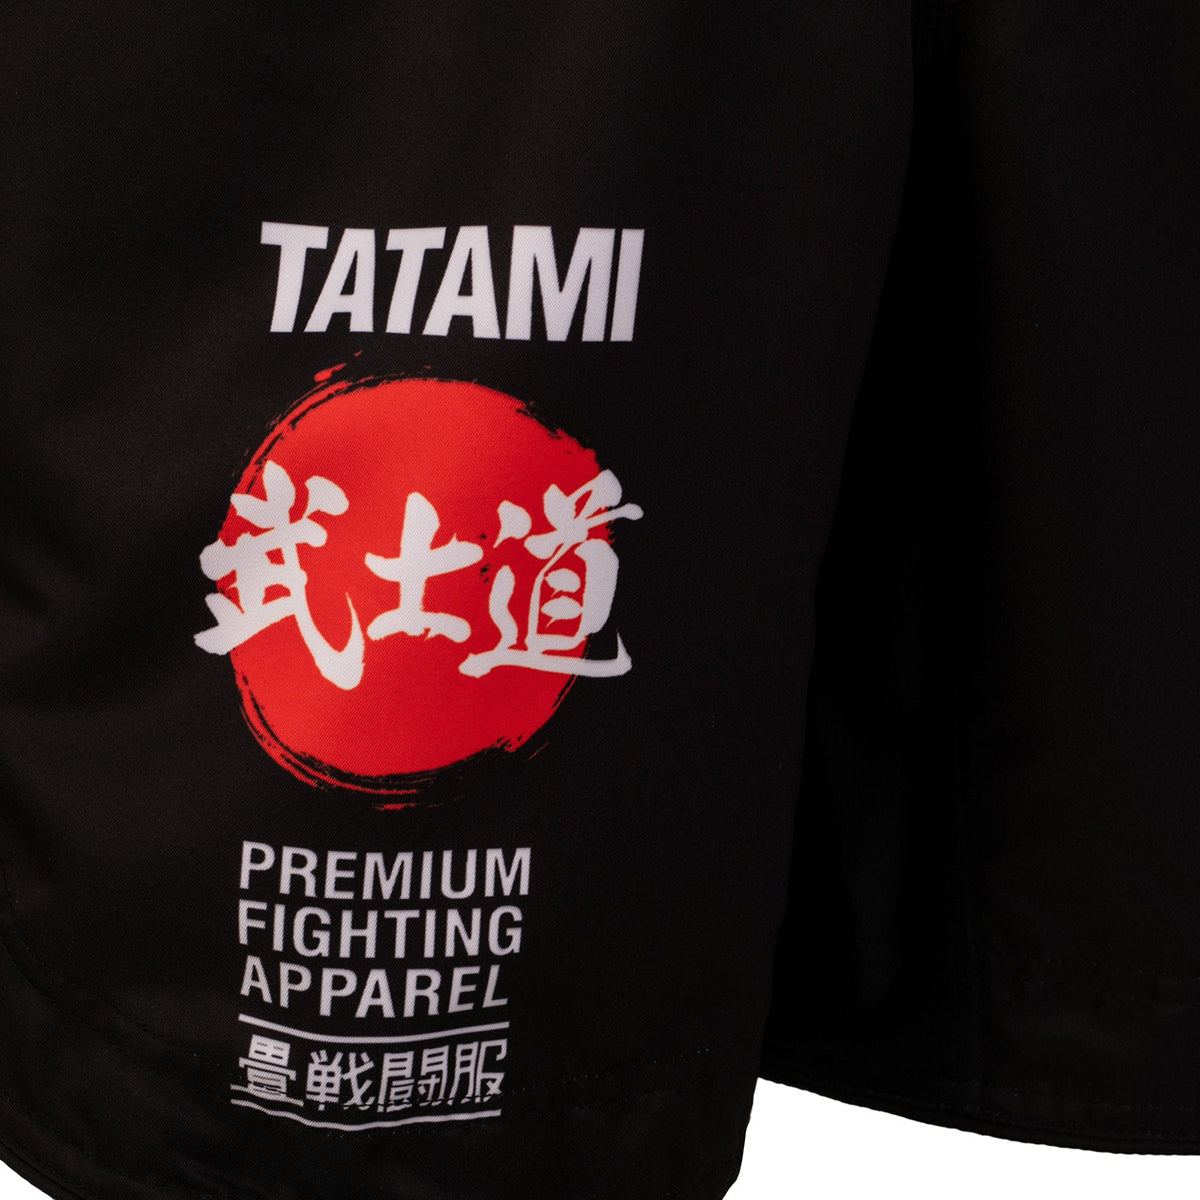 Tatami Fightwear Bushido Grappling Shorts - Black Tatami